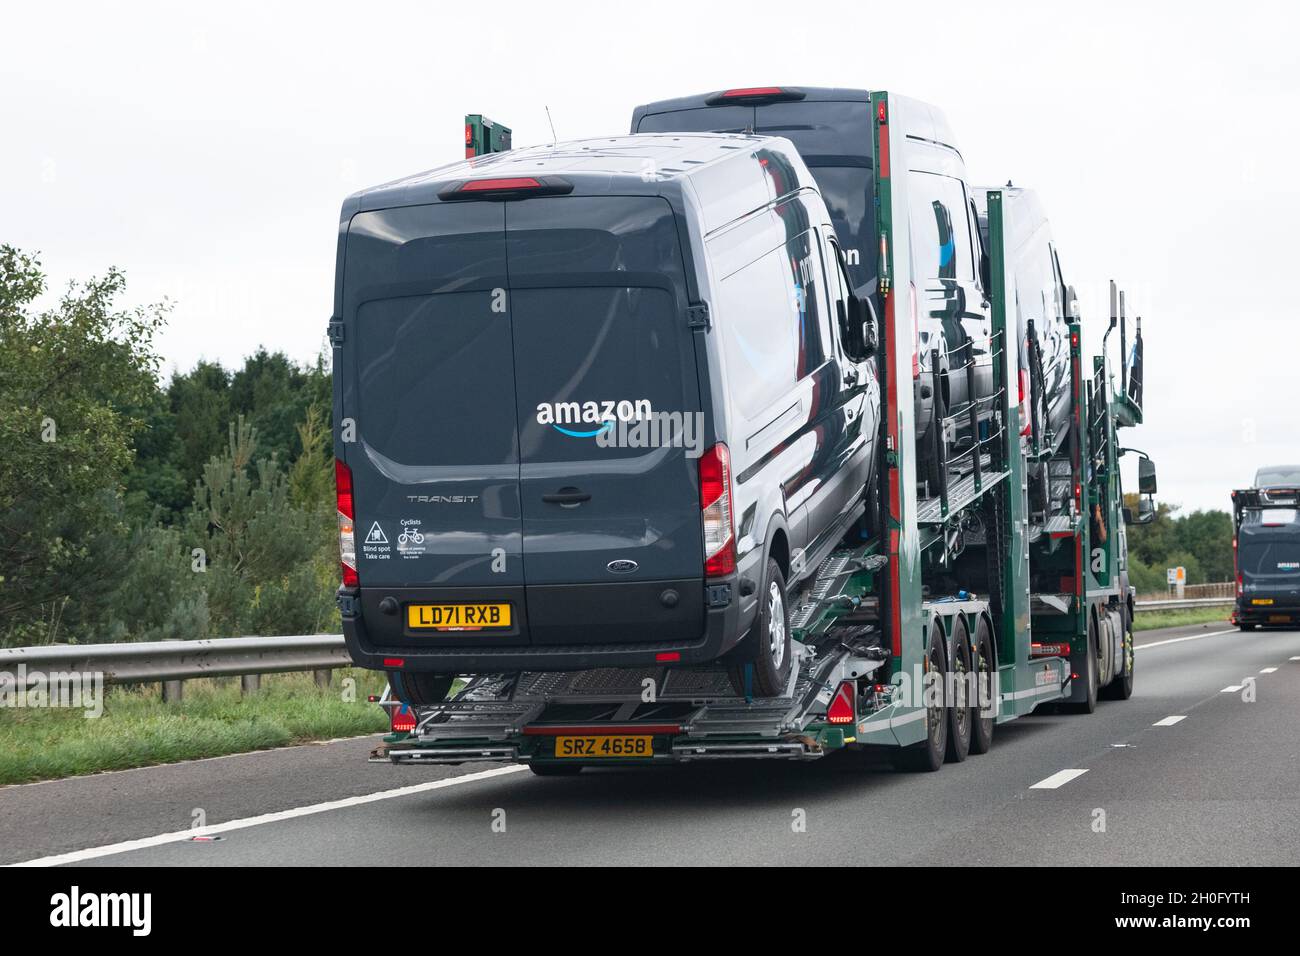 Nouveau camion de livraison Amazon ford - Royaume-Uni Banque D'Images